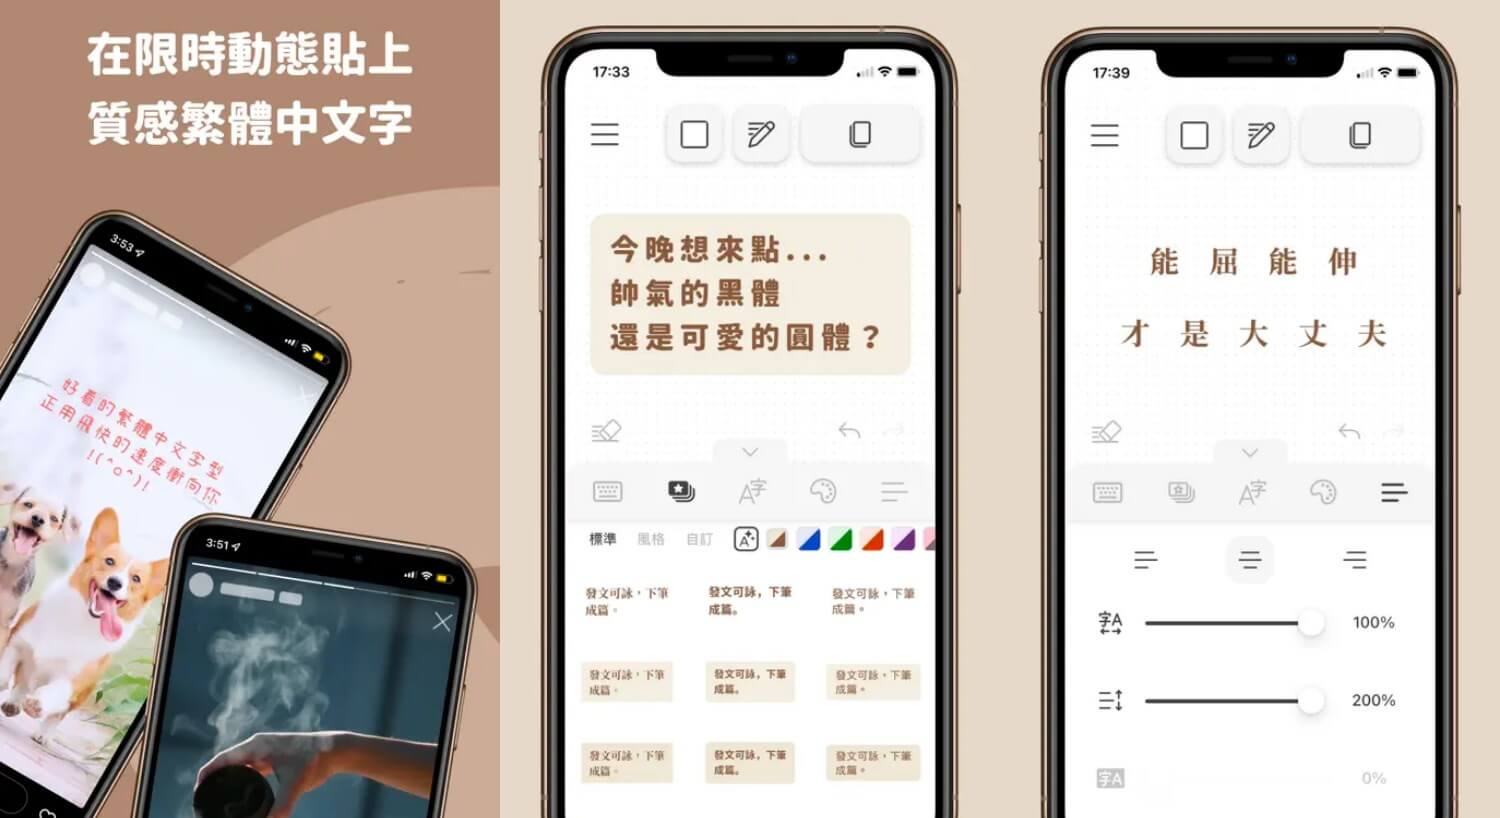 IG 字體 App - 下筆 | 質感繁中文編輯